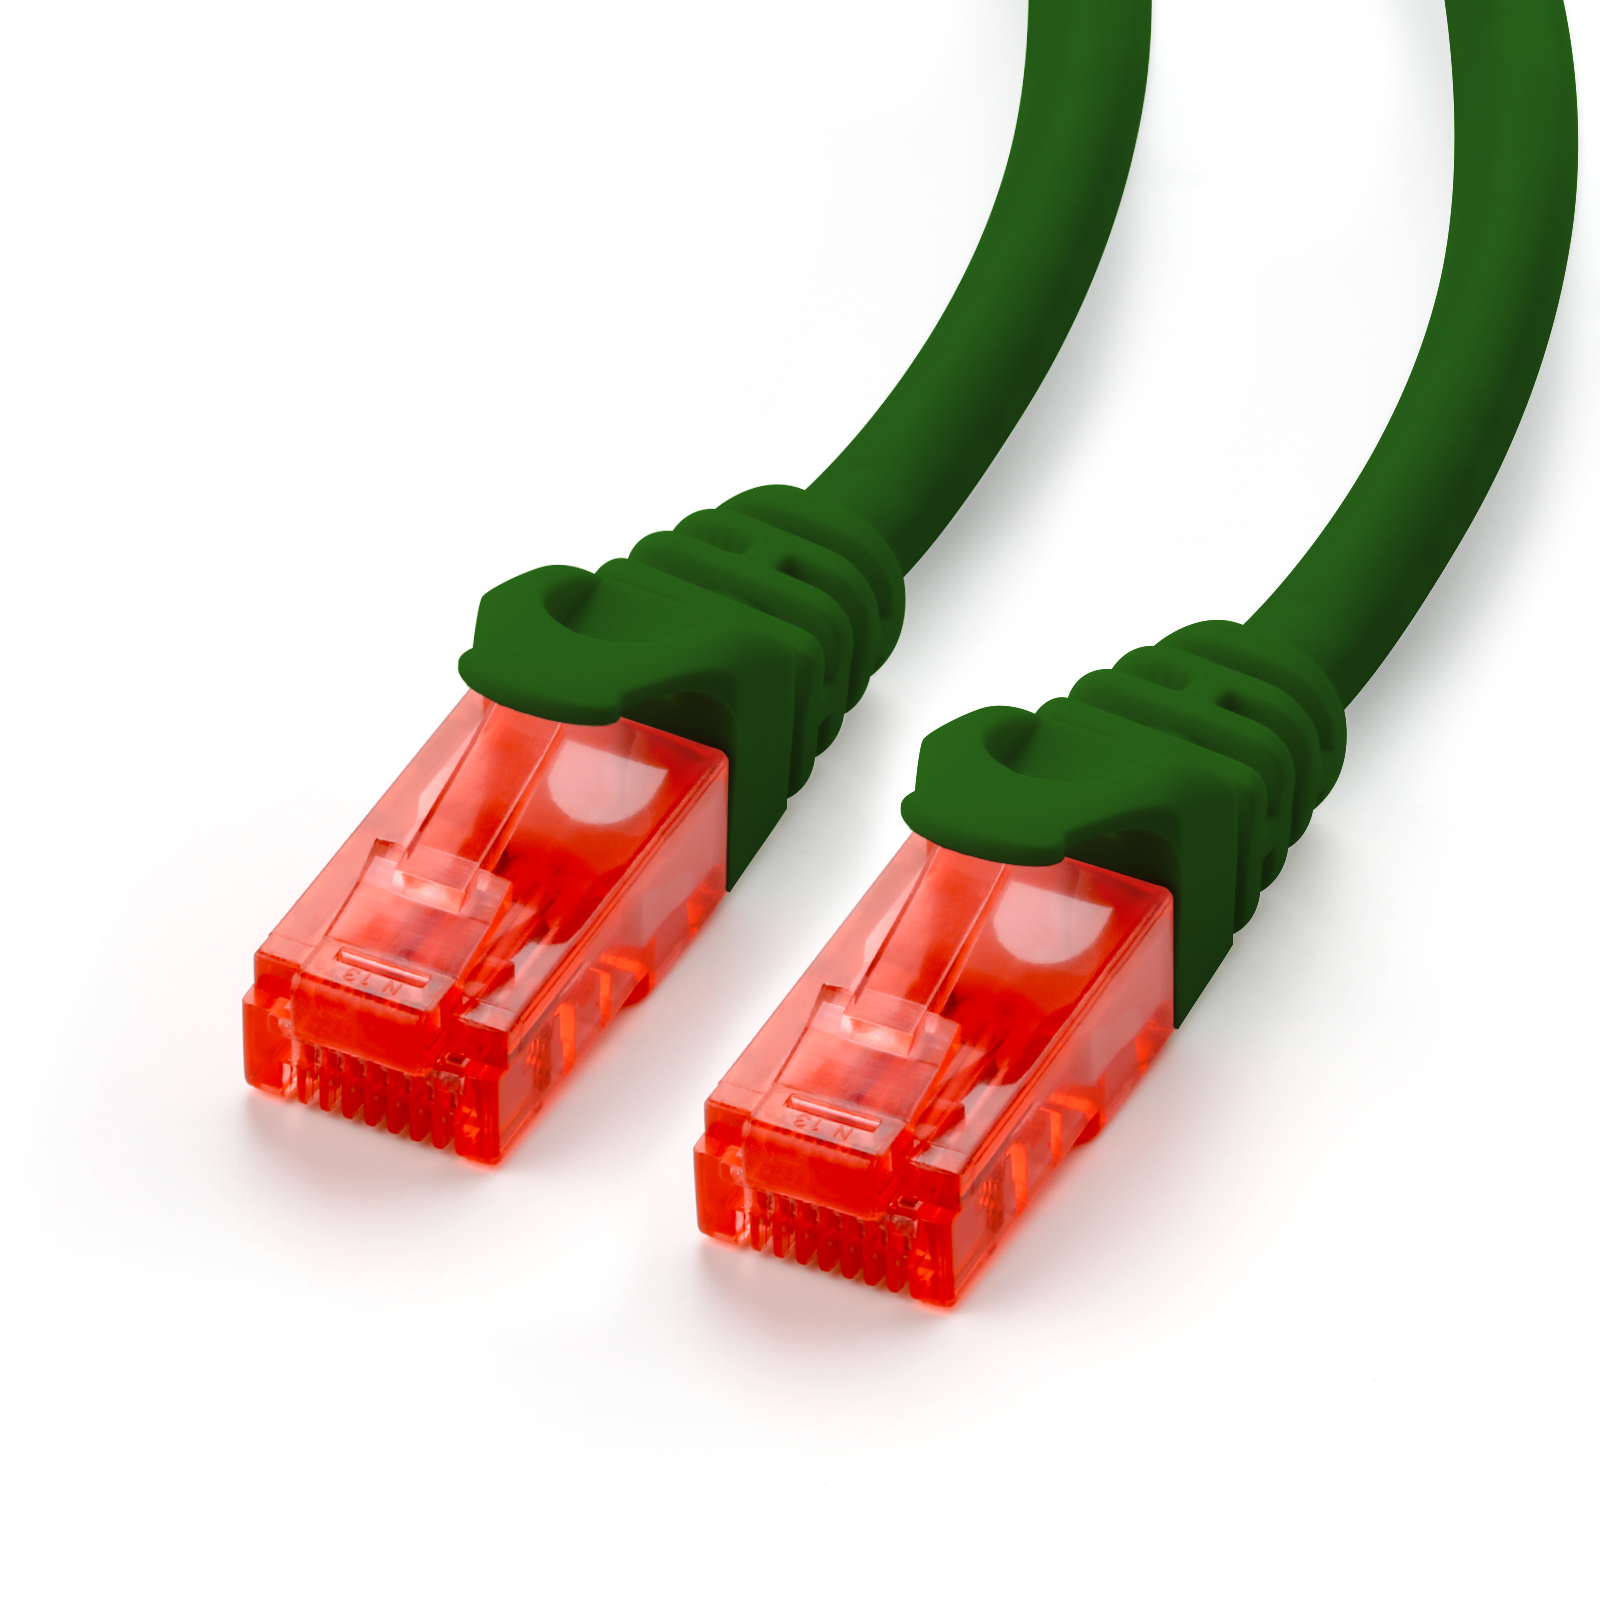 CSL 15m Patchkabel, Cat6 LAN Kabel, grün